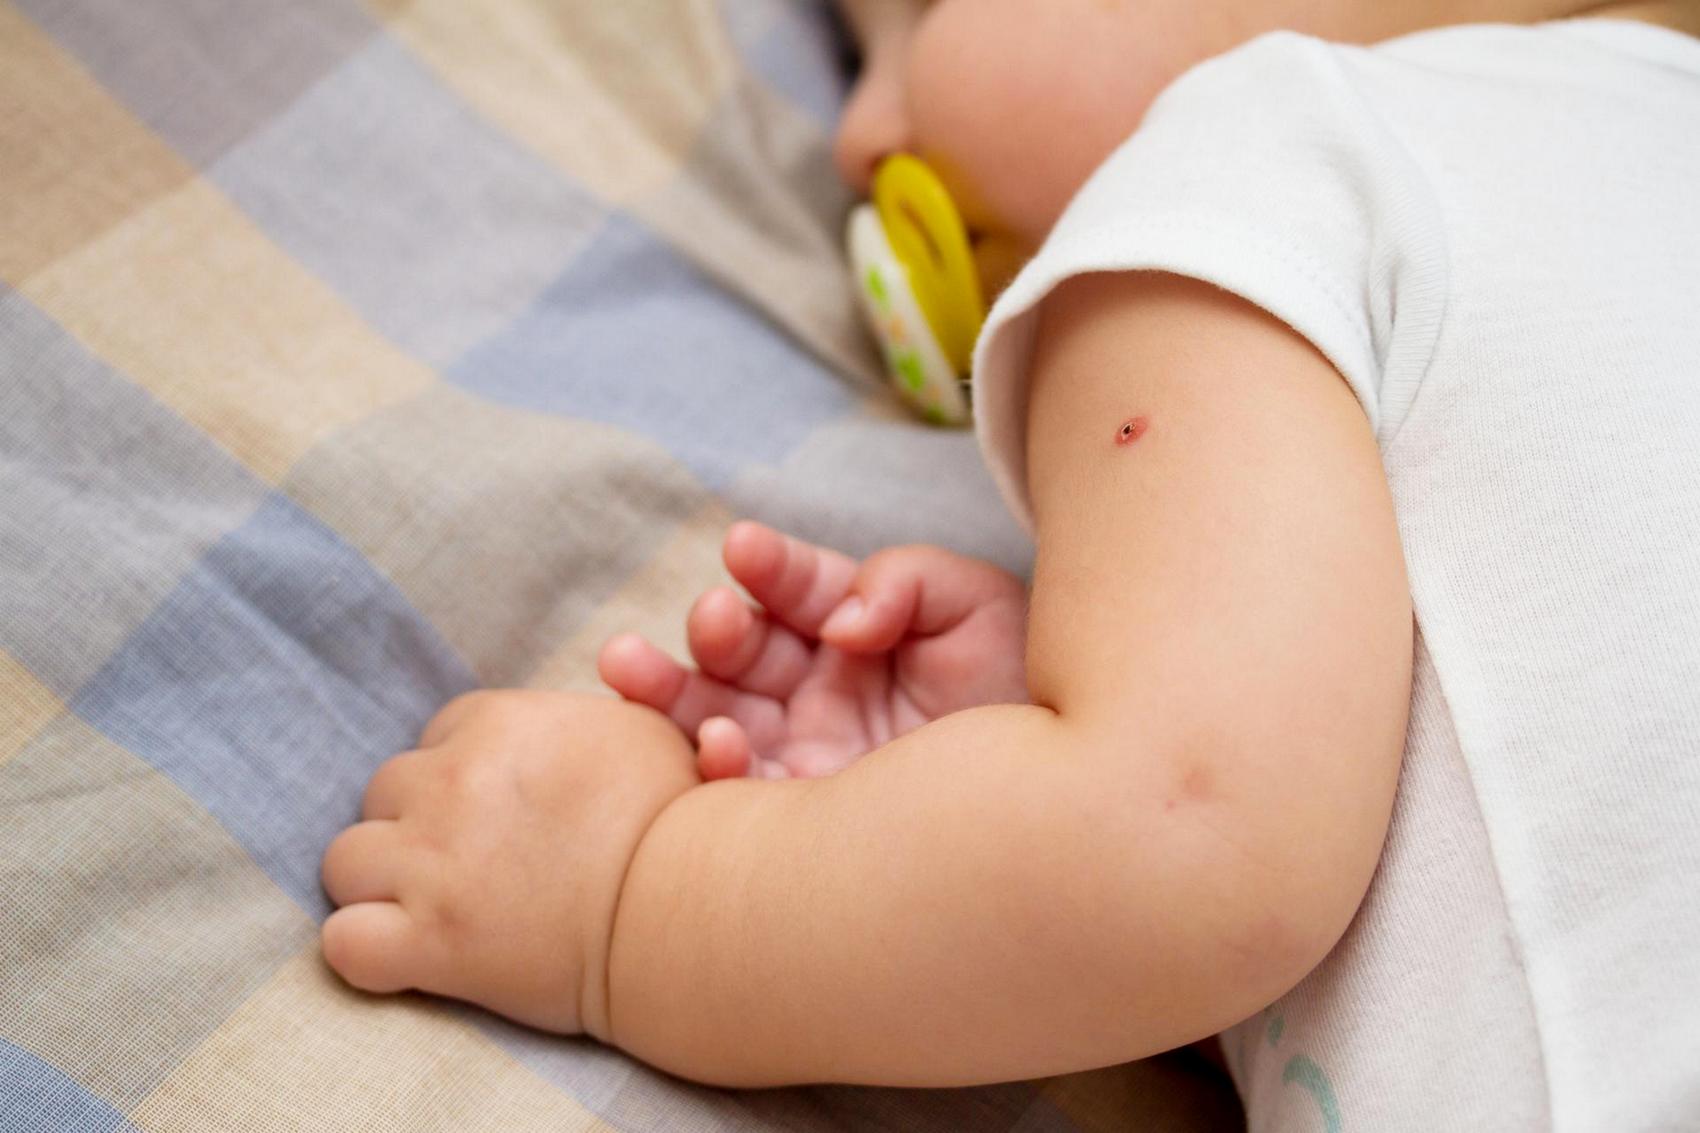 В Украине закончилась вакцина от туберкулёза: детей из роддомов выписывают без прививки БЦЖ